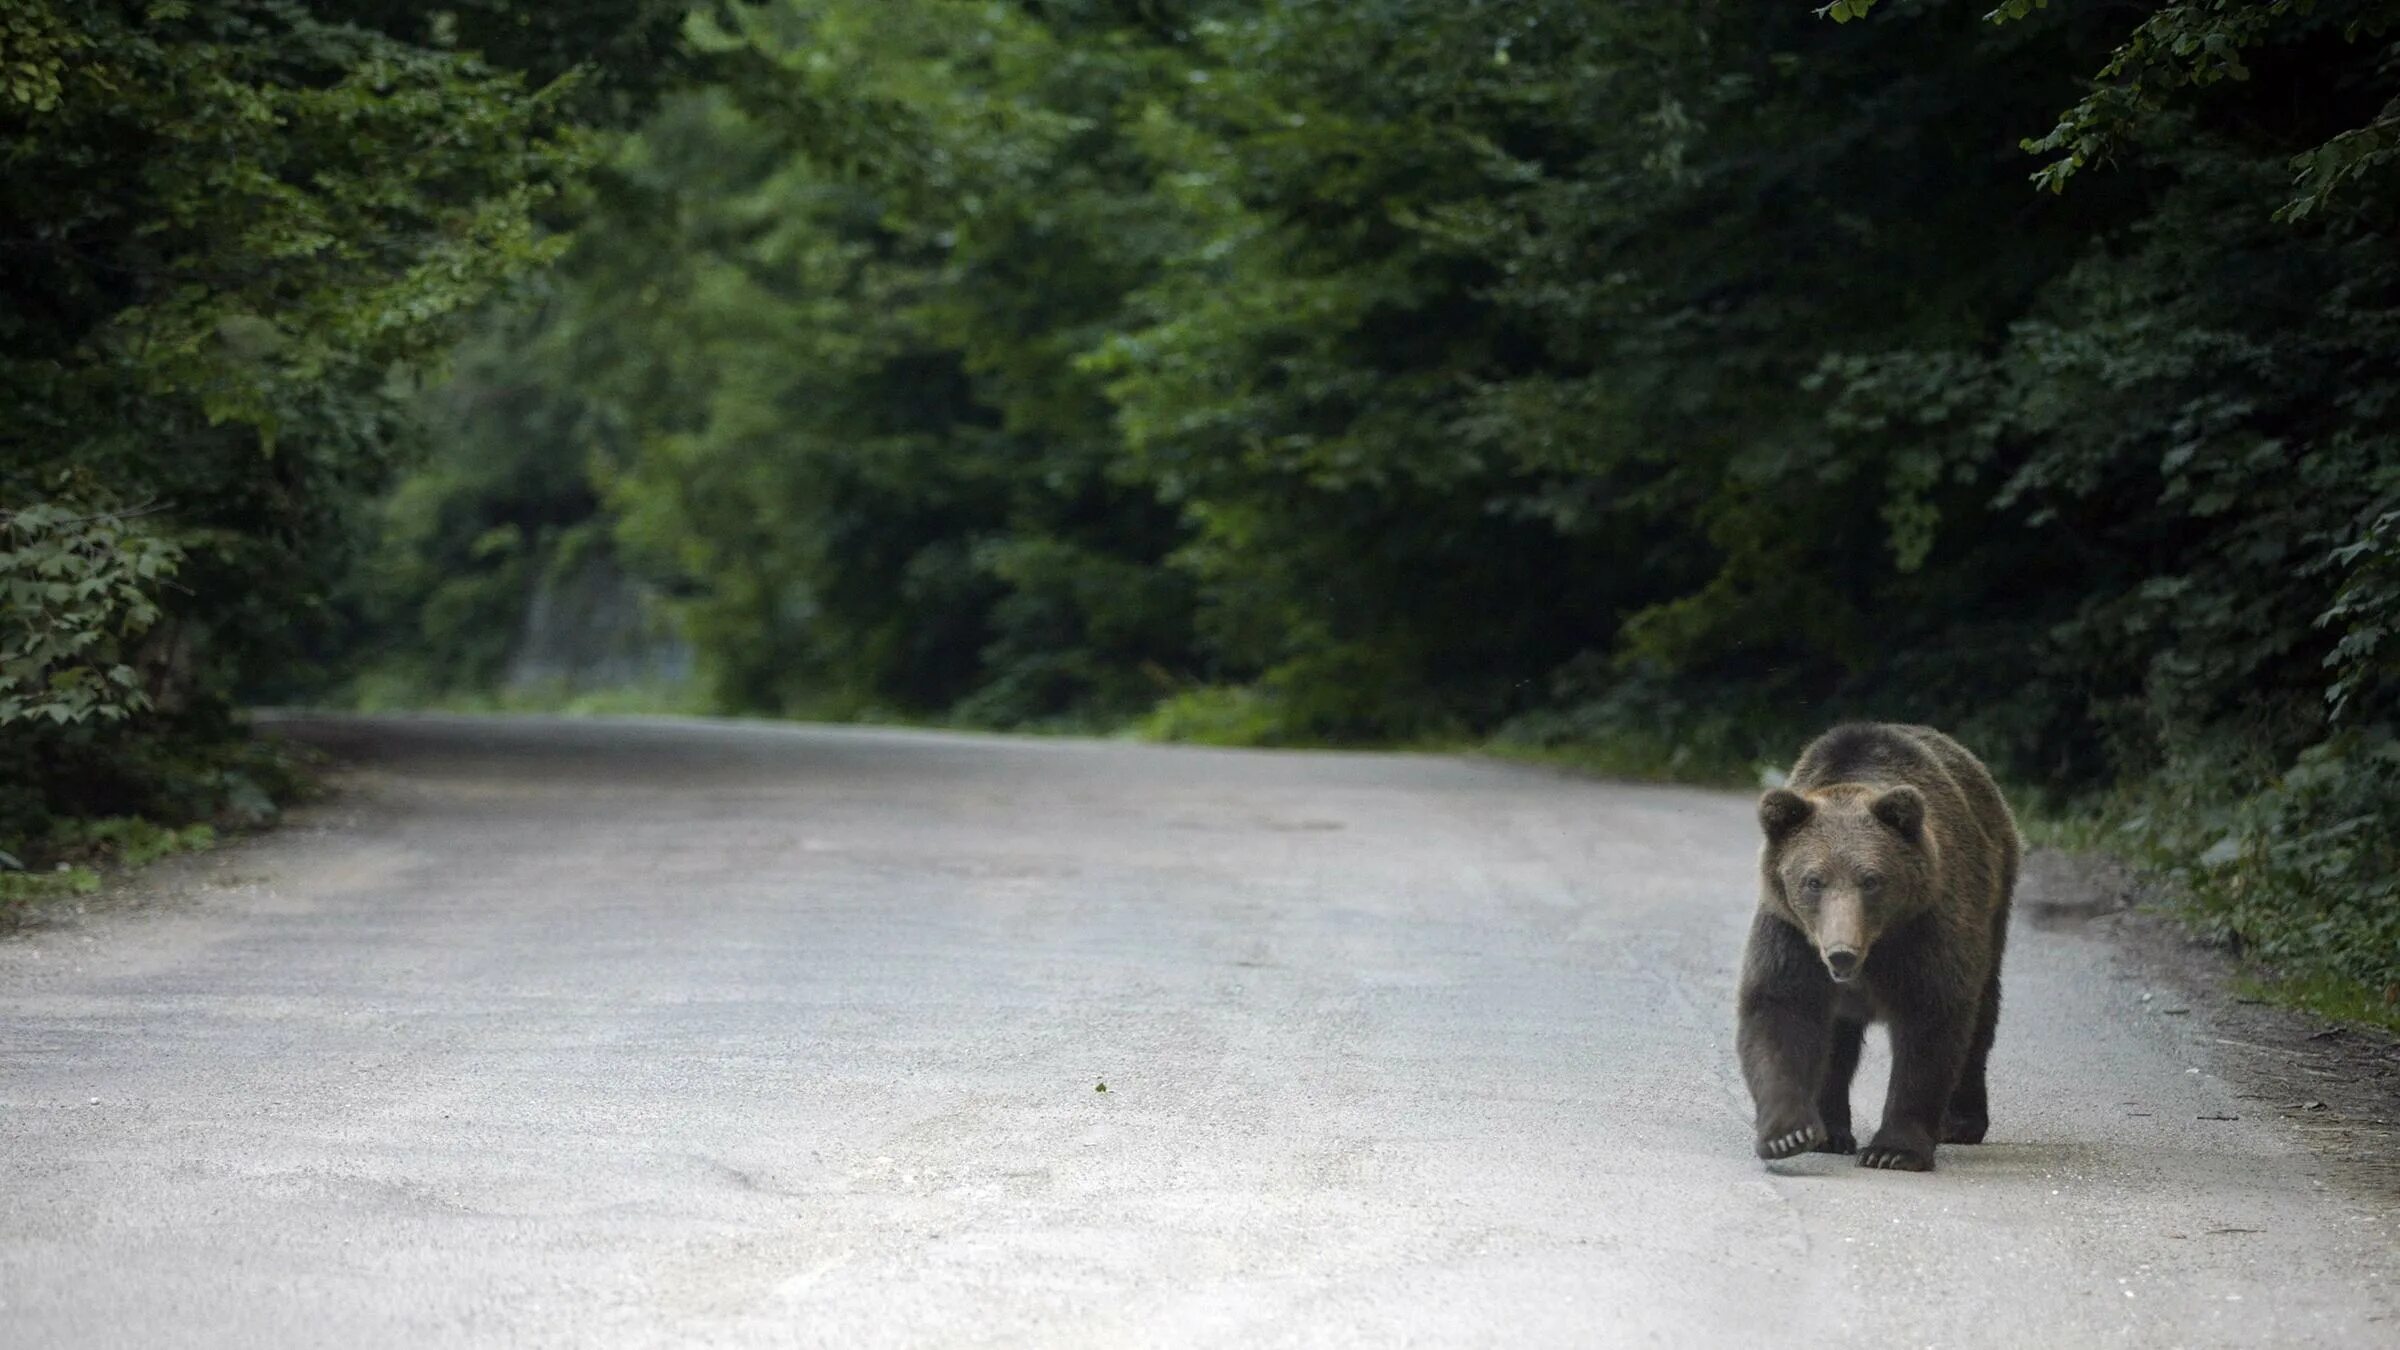 Макс скорость медведя. Медведь бежит. Медведь в лесу. Медведь на дороге. Бурый медведь на дороге.